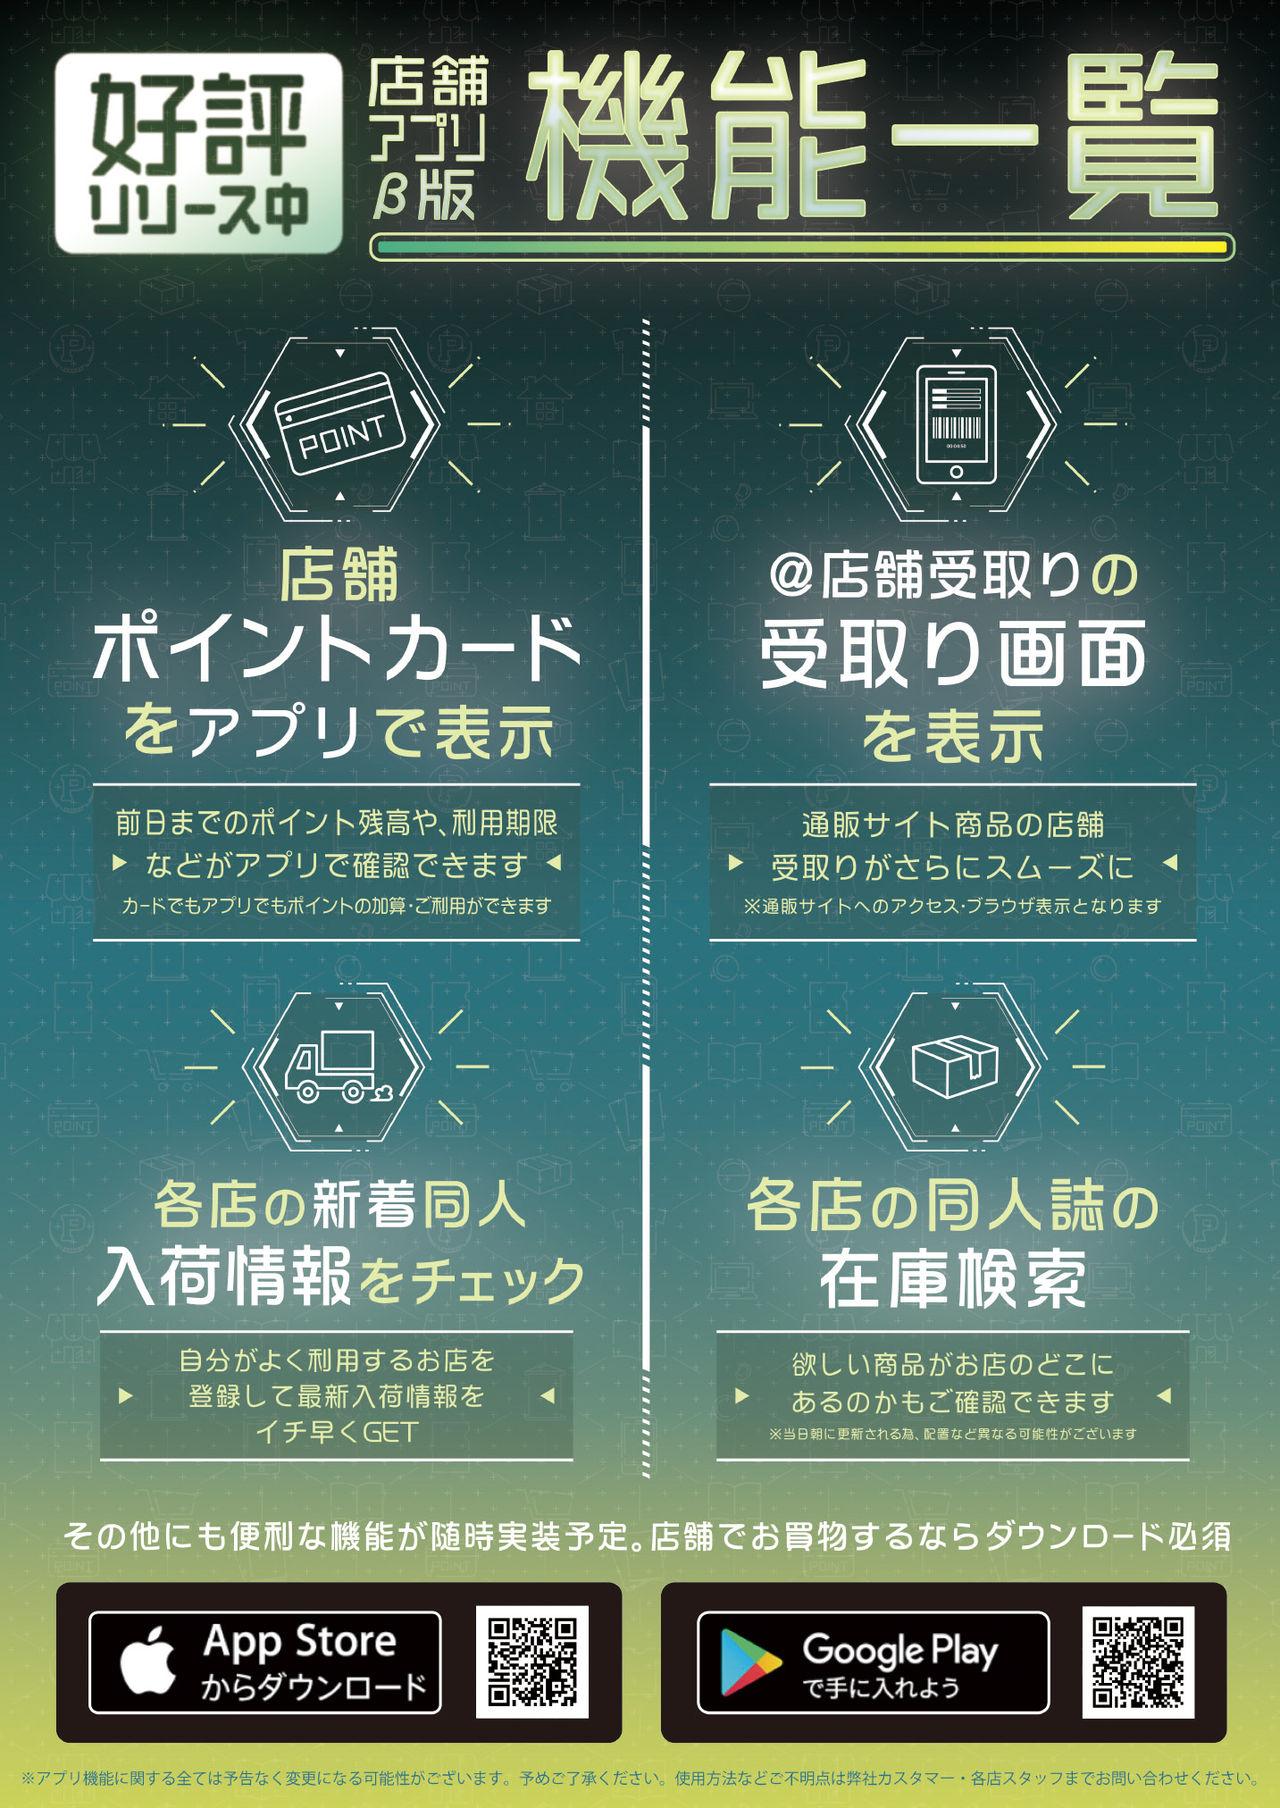 月刊うりぼうざっか店 2020年10月30日発行号 10